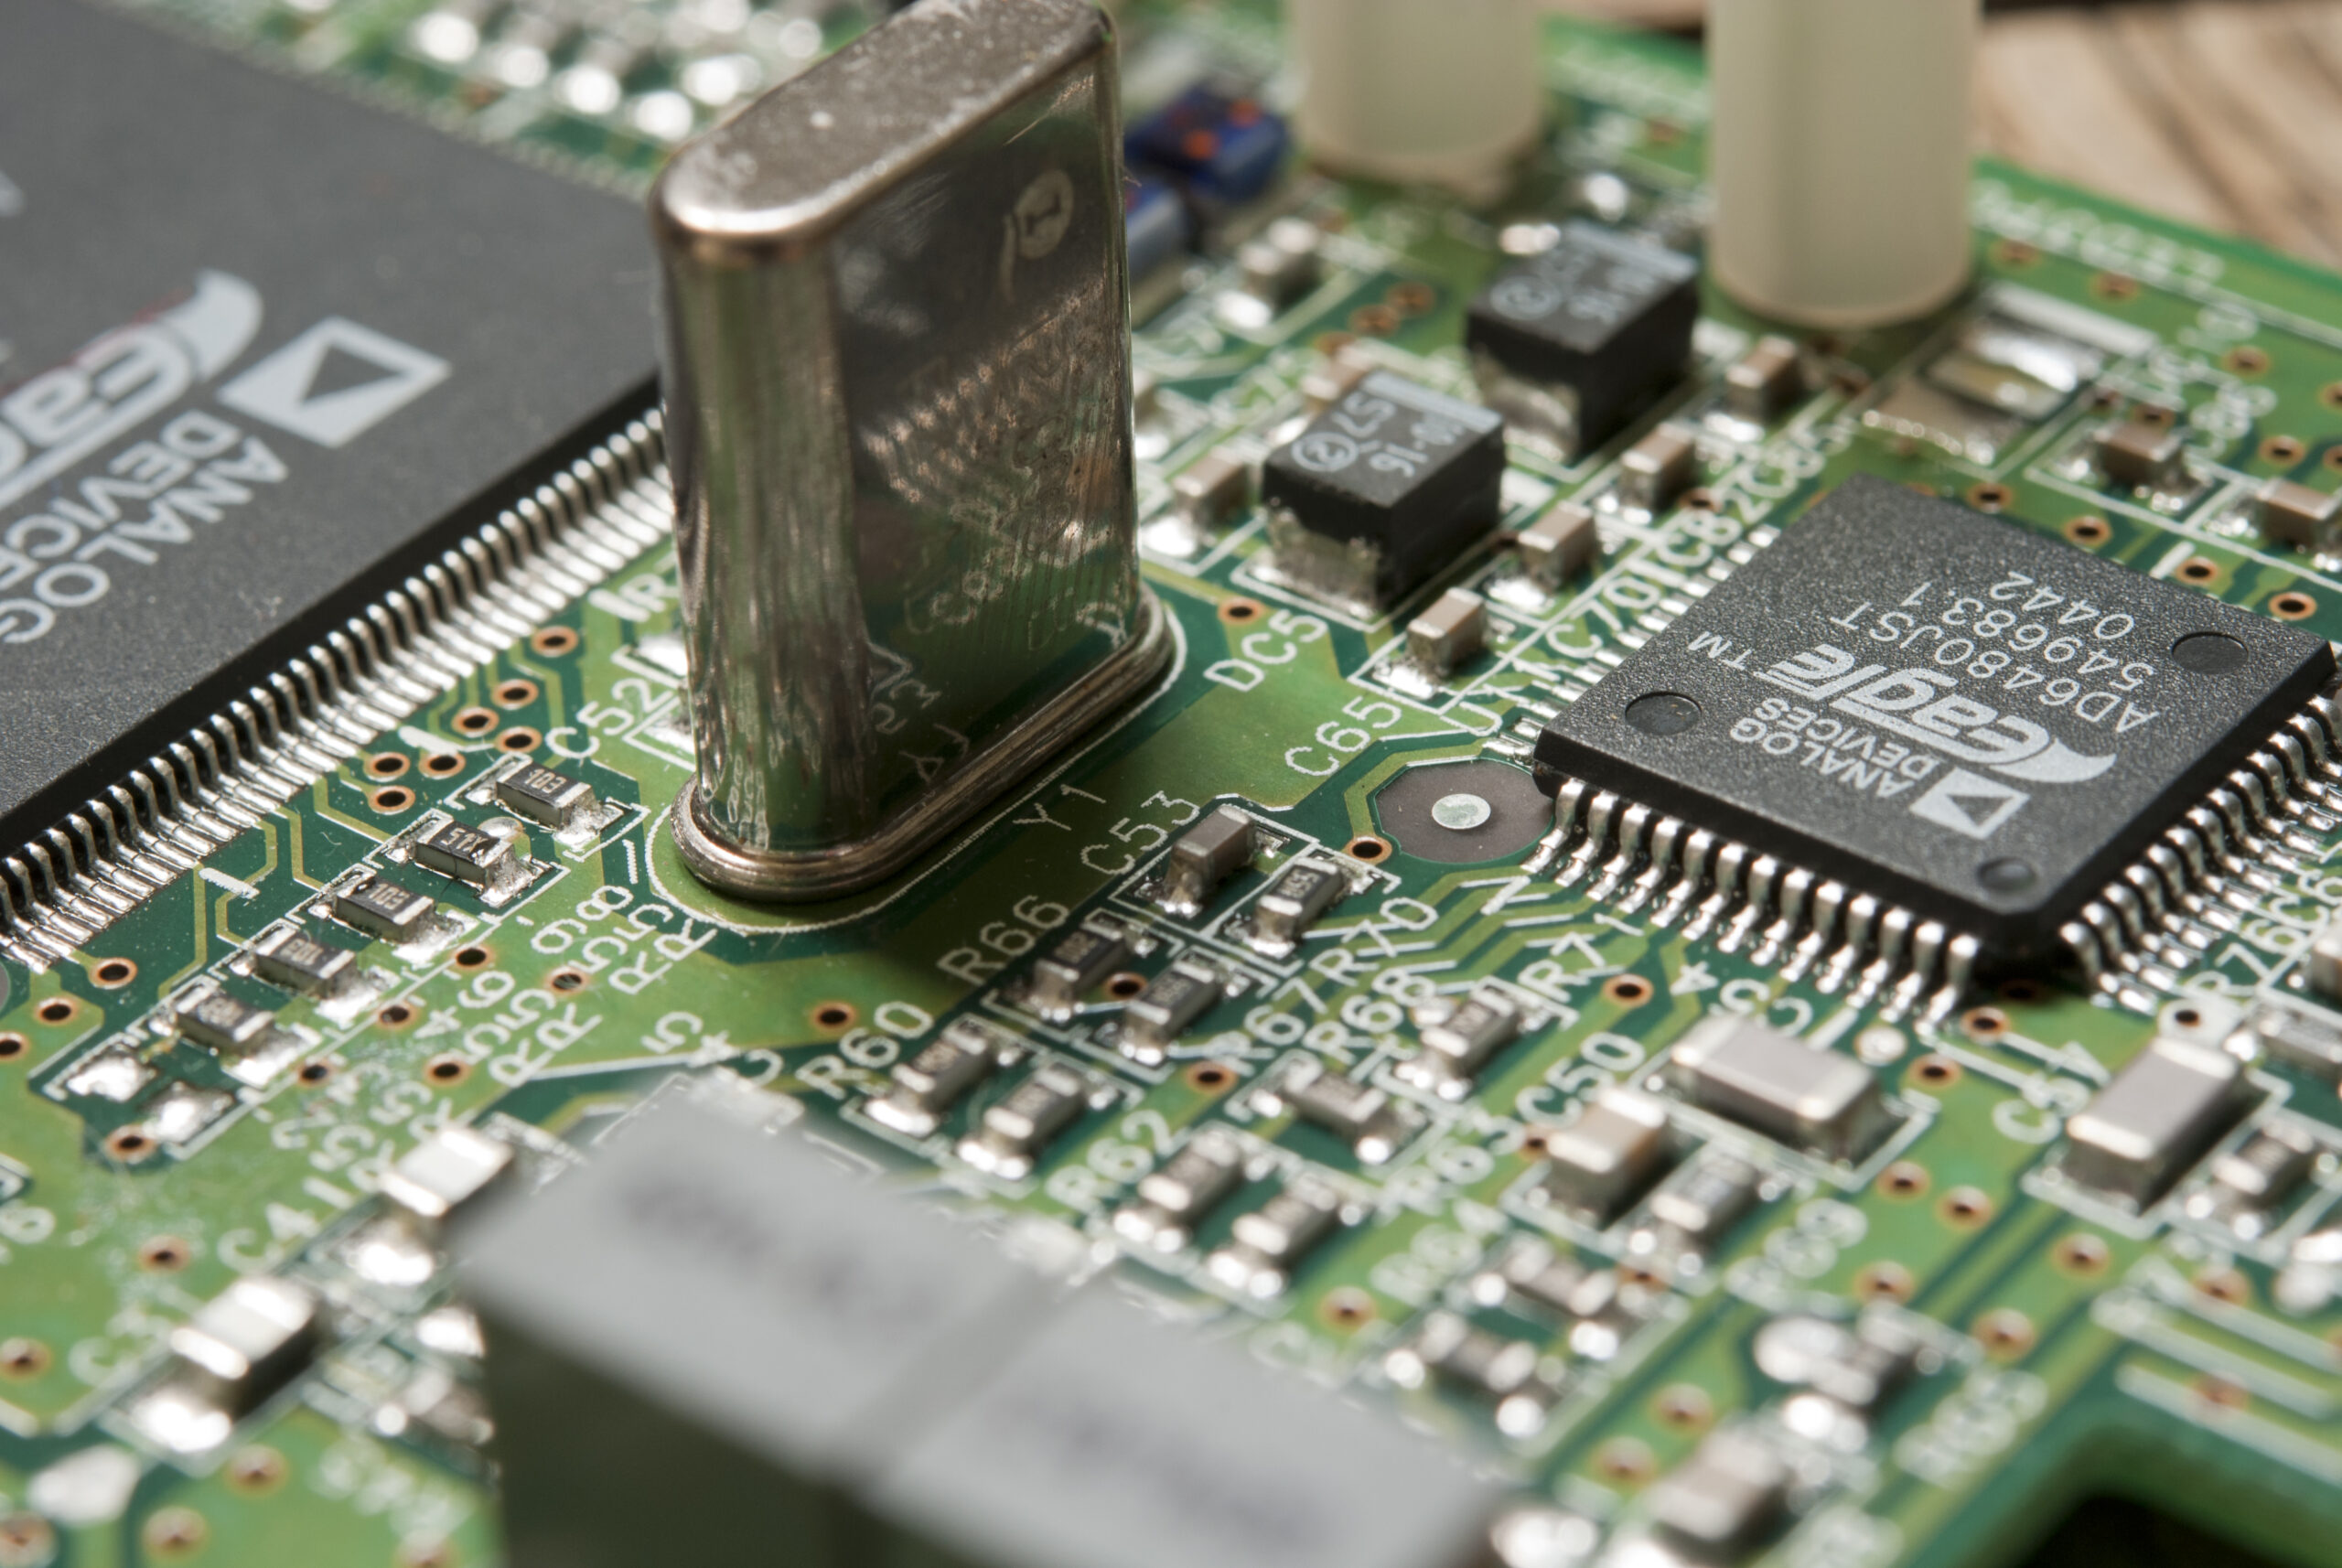 Kekurangan Integrated Circuit